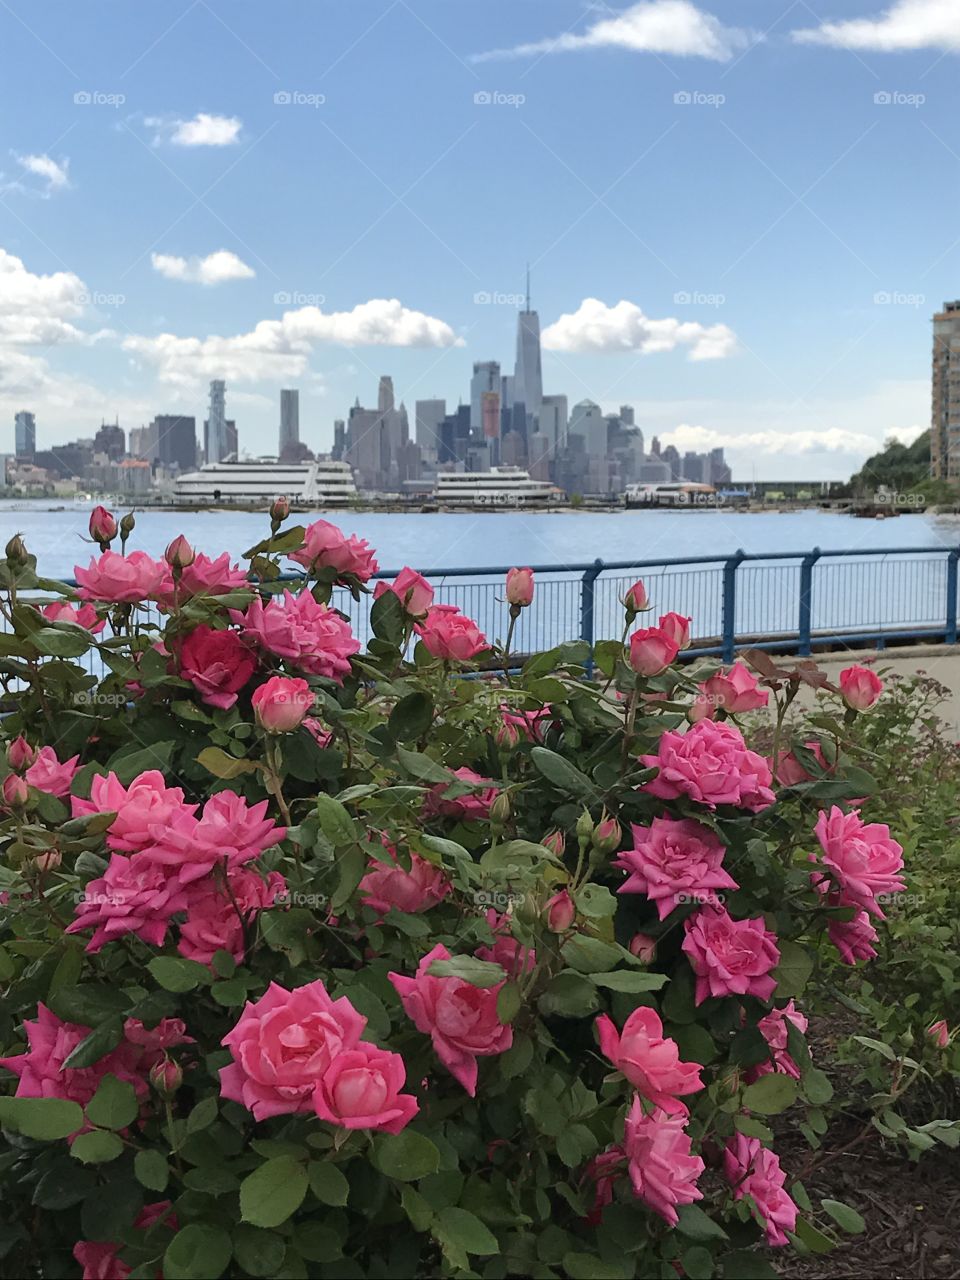 Roses On The Hudson